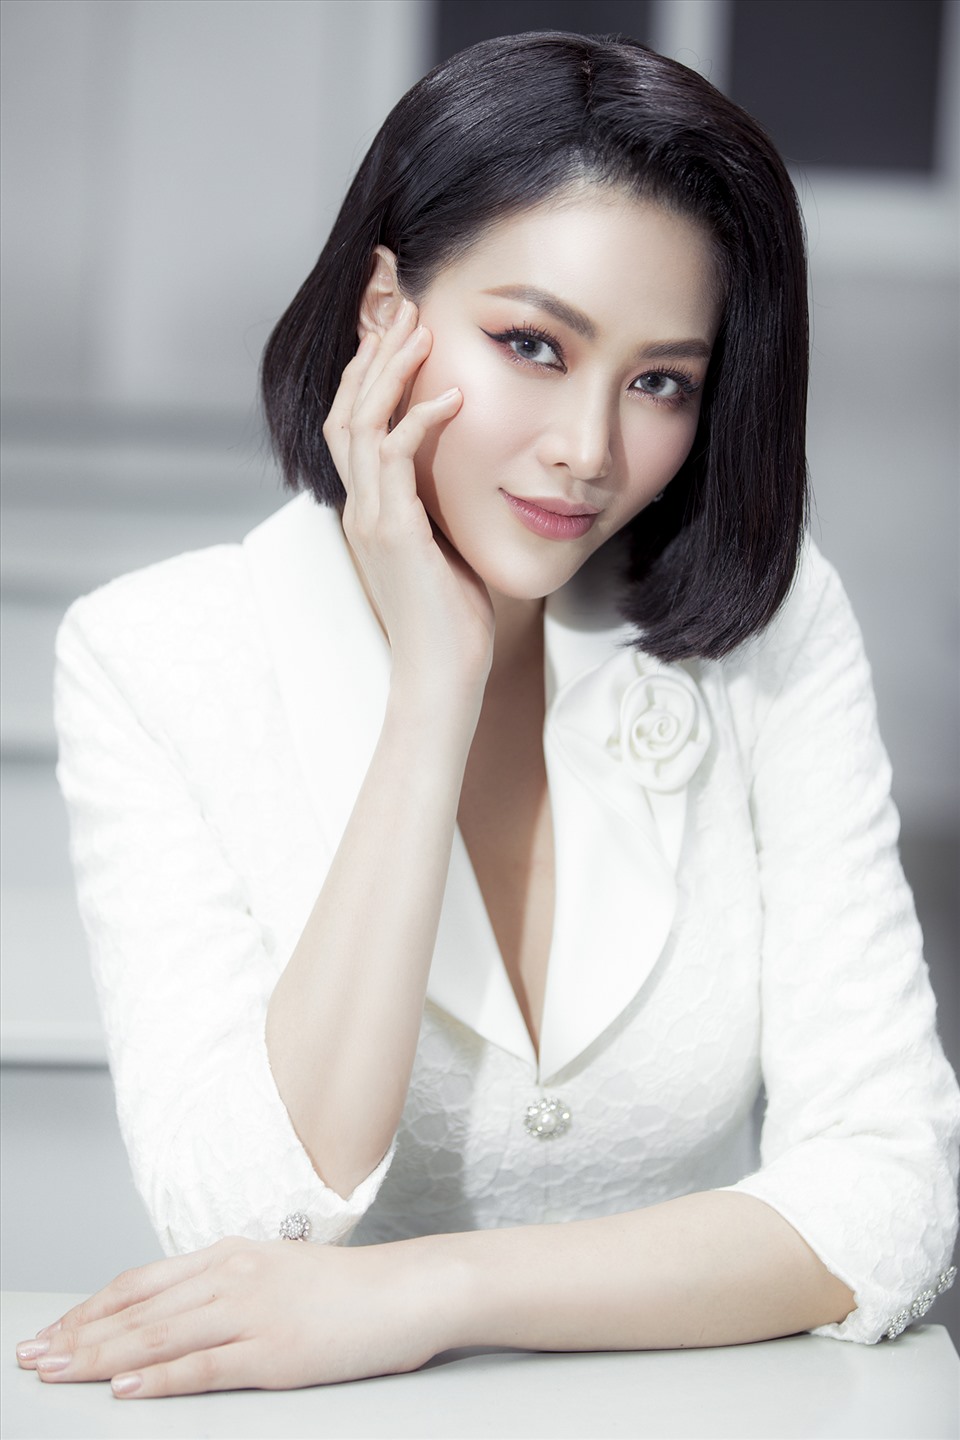 Trước đó, Phương Khánh xuất sắc giành ngôi vị Á hậu 2 Hoa hậu Biển Việt Nam Toàn cầu 2018. Hiện tại, cô đang là gương mặt được nhiều nhãn hàng quốc tế quan tâm.